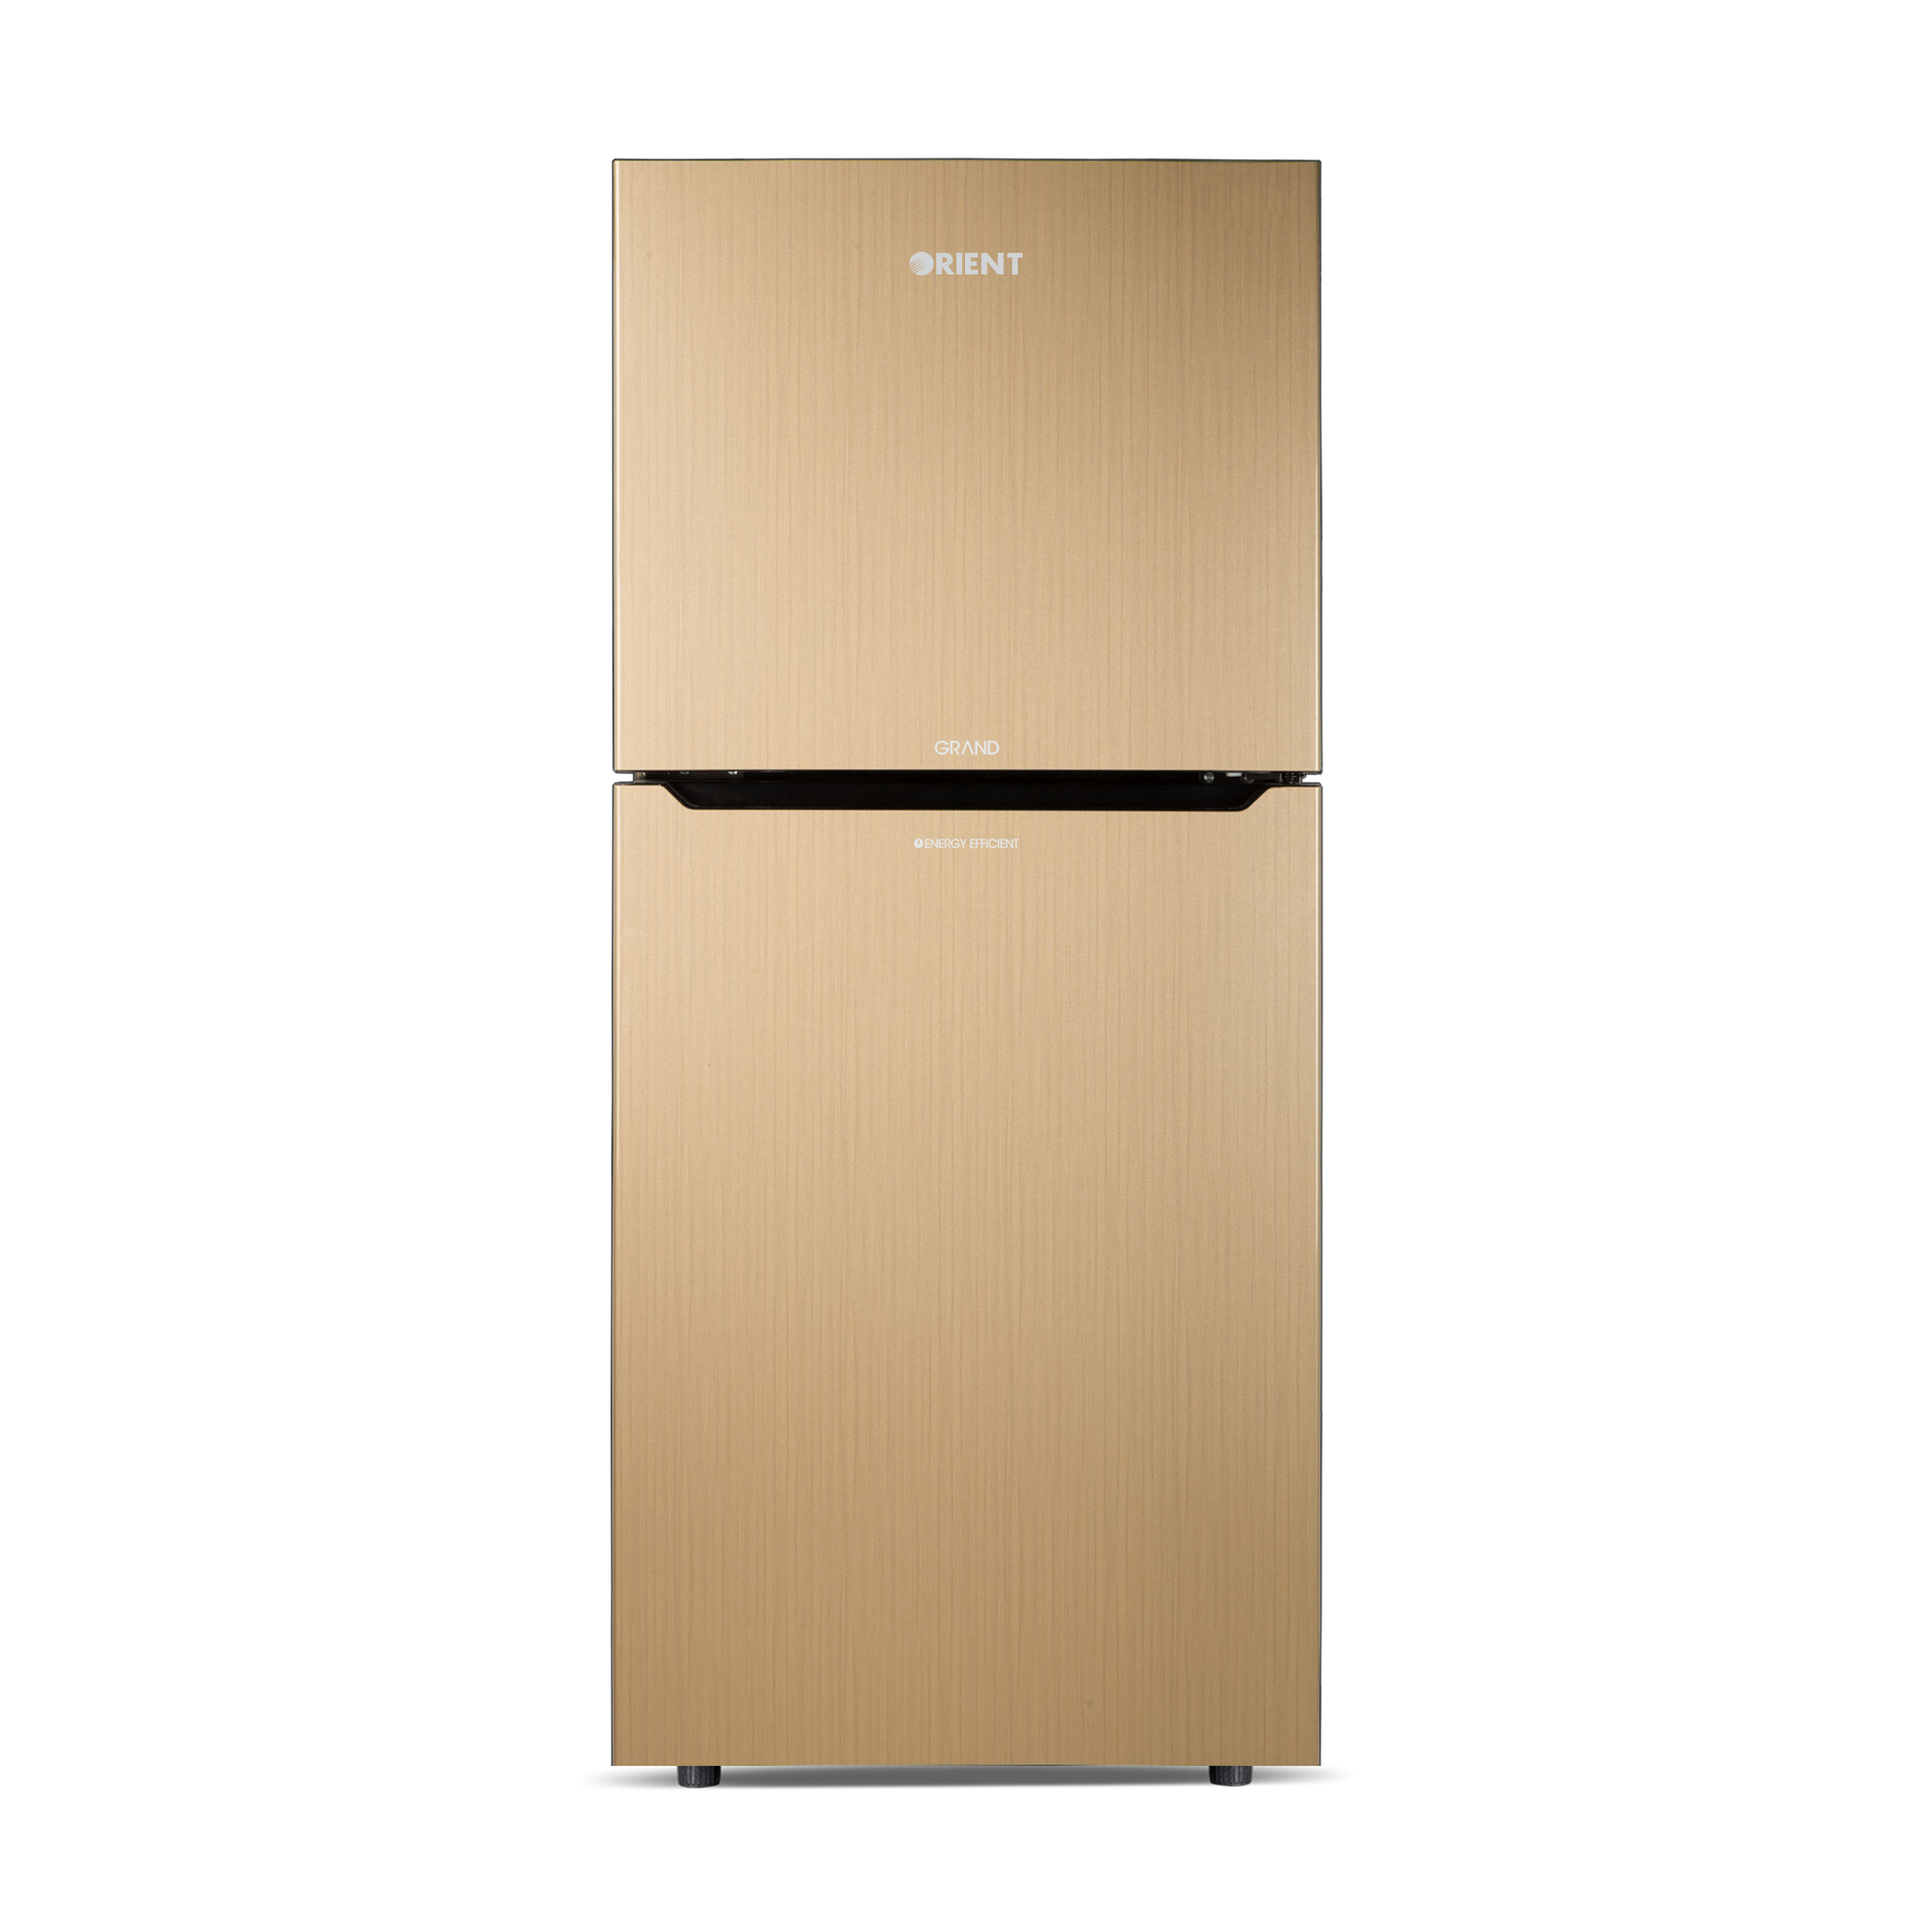 Orient Refrigerator Double Door - 335 Grand VCM